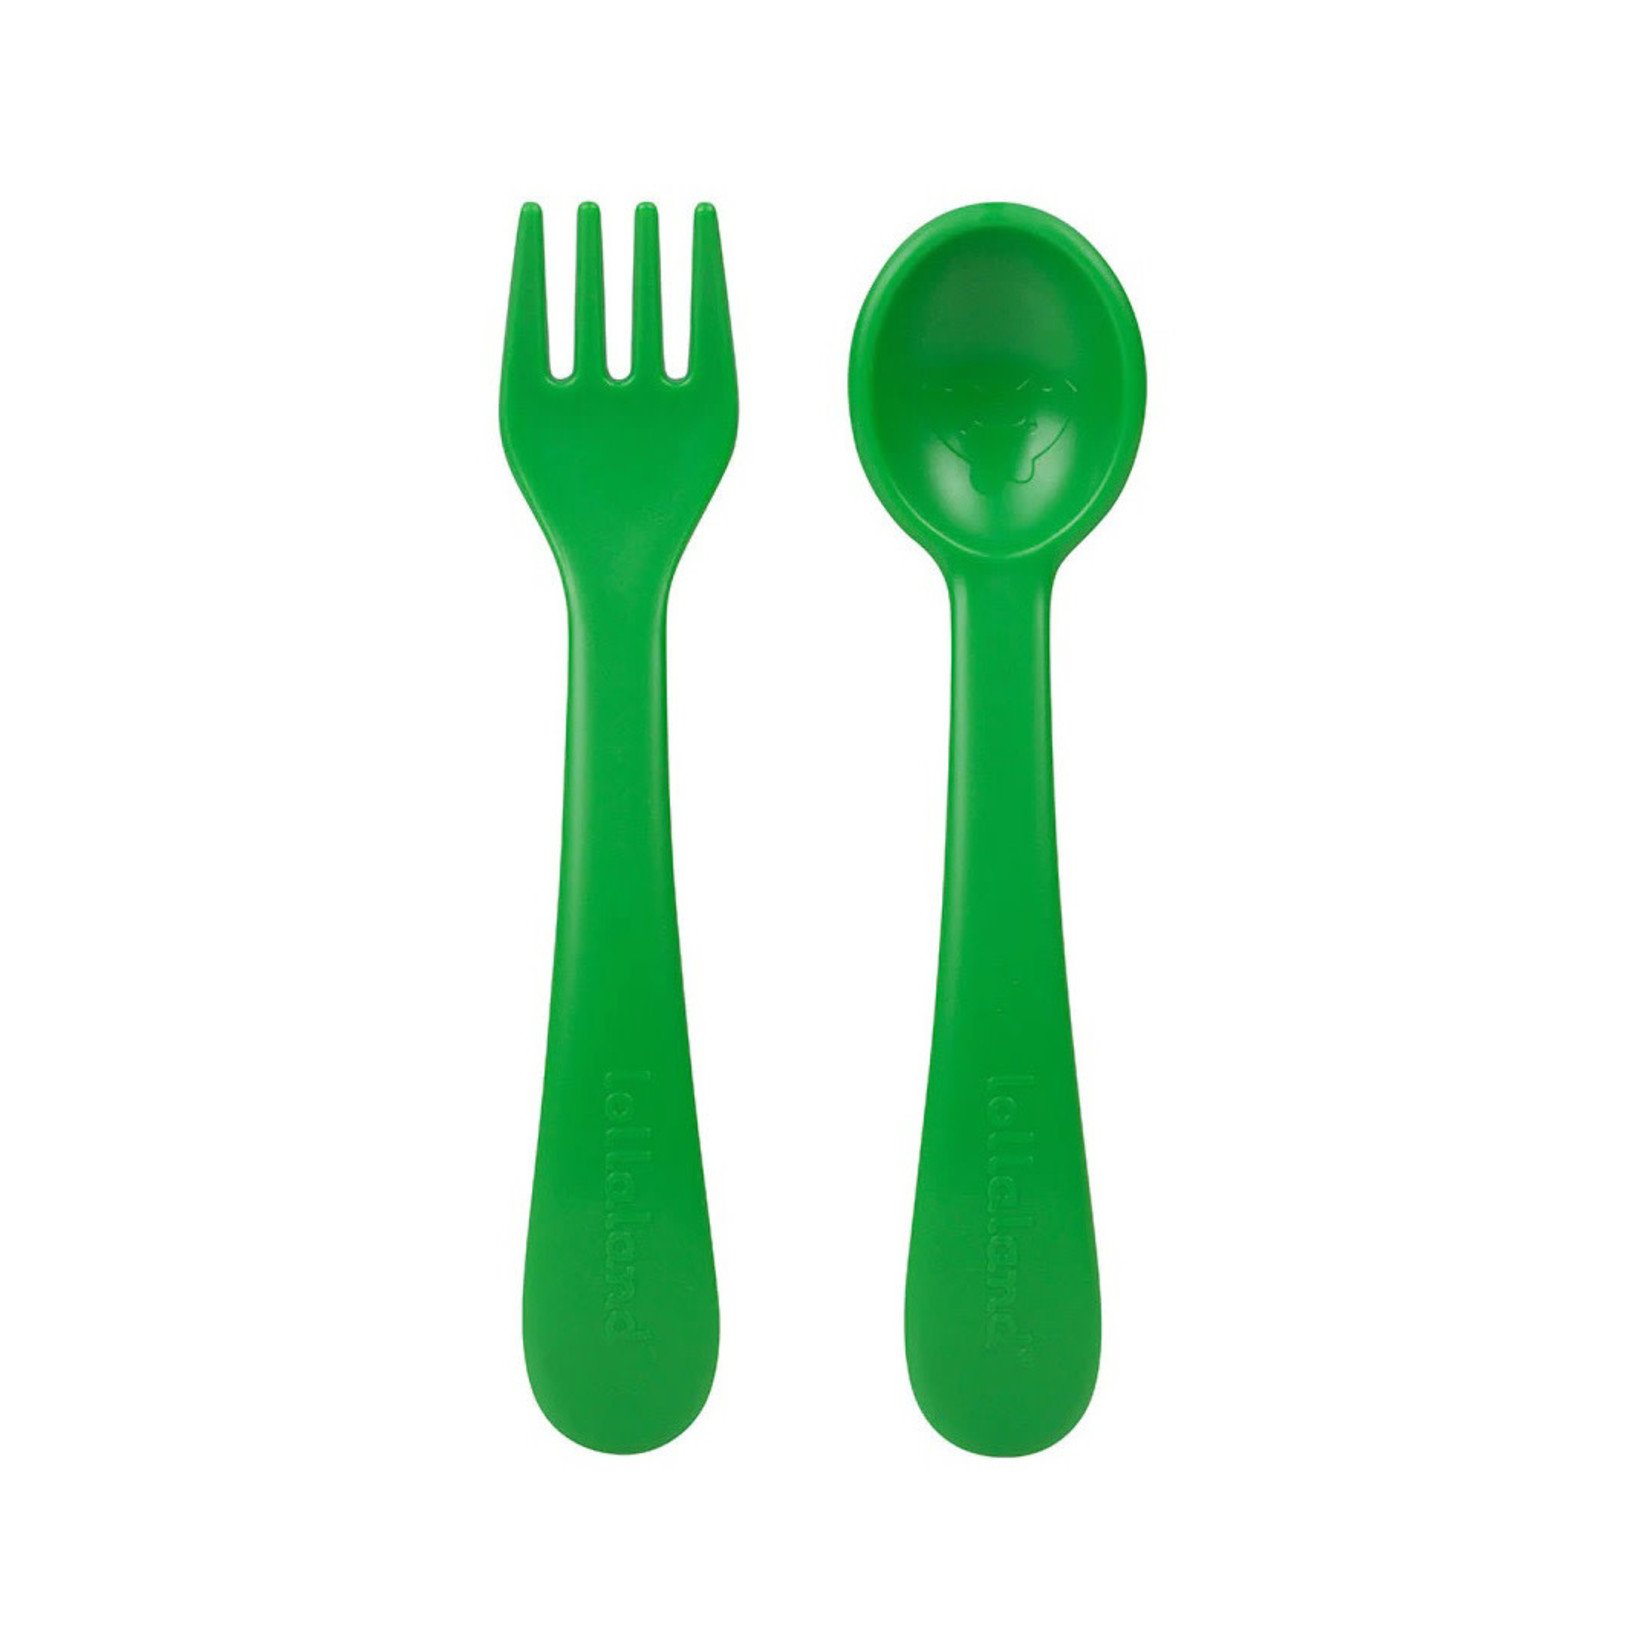 https://cdn.shoplightspeed.com/shops/652247/files/43437151/1652x1652x1/lollaland-utensil-set-2-spoon-2-fork-travel-pouch.jpg